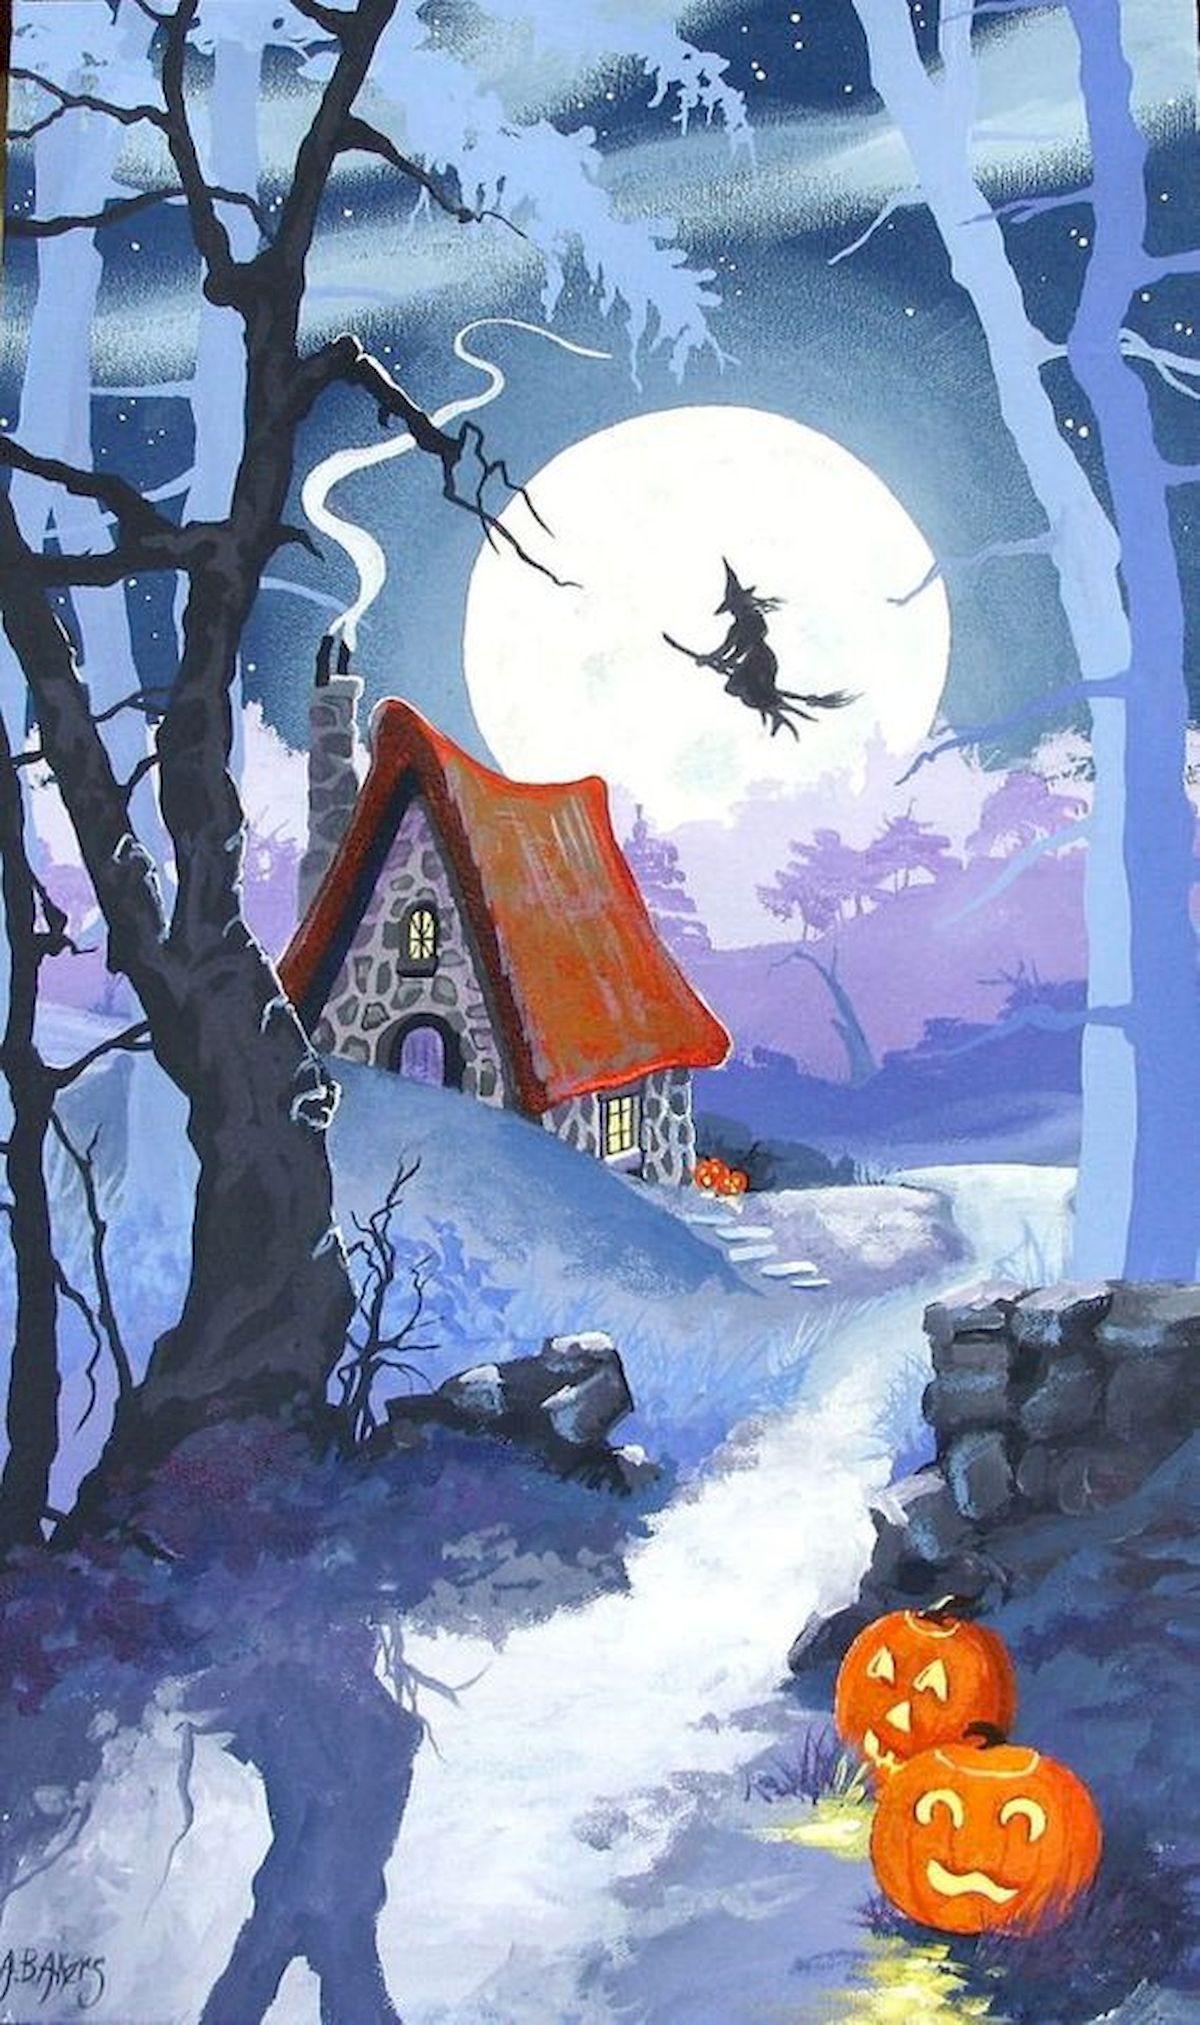 Watercolor Halloween Wallpapers - 4k, HD Watercolor Halloween ...